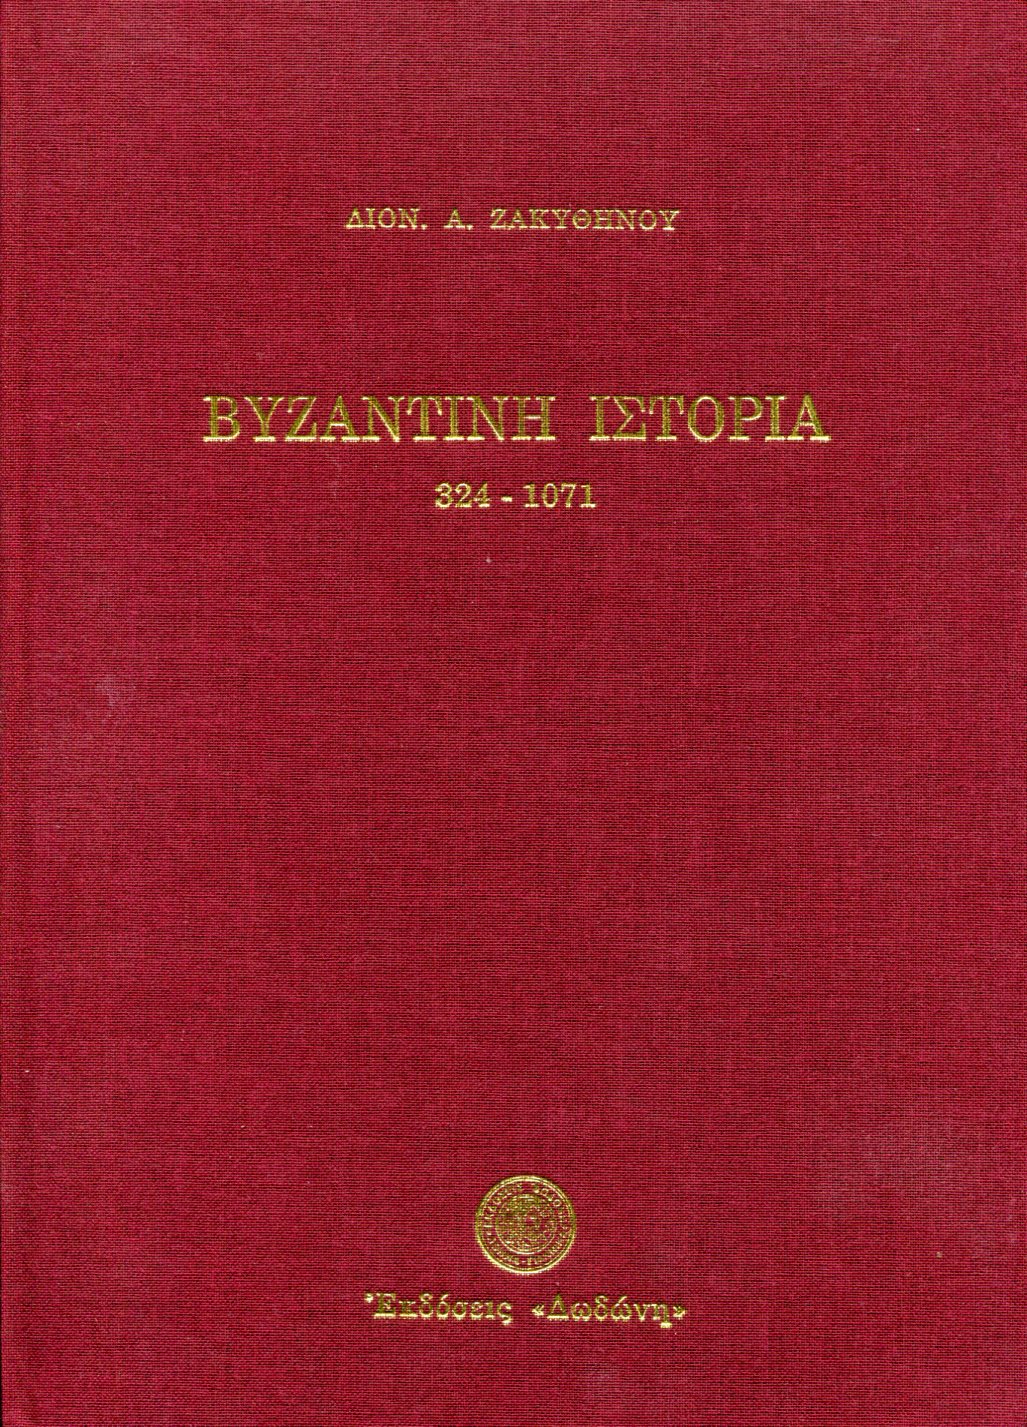 ΒΥΖΑΝΤΙΝΗ ΙΣΤΟΡΙΑ, 324-1071